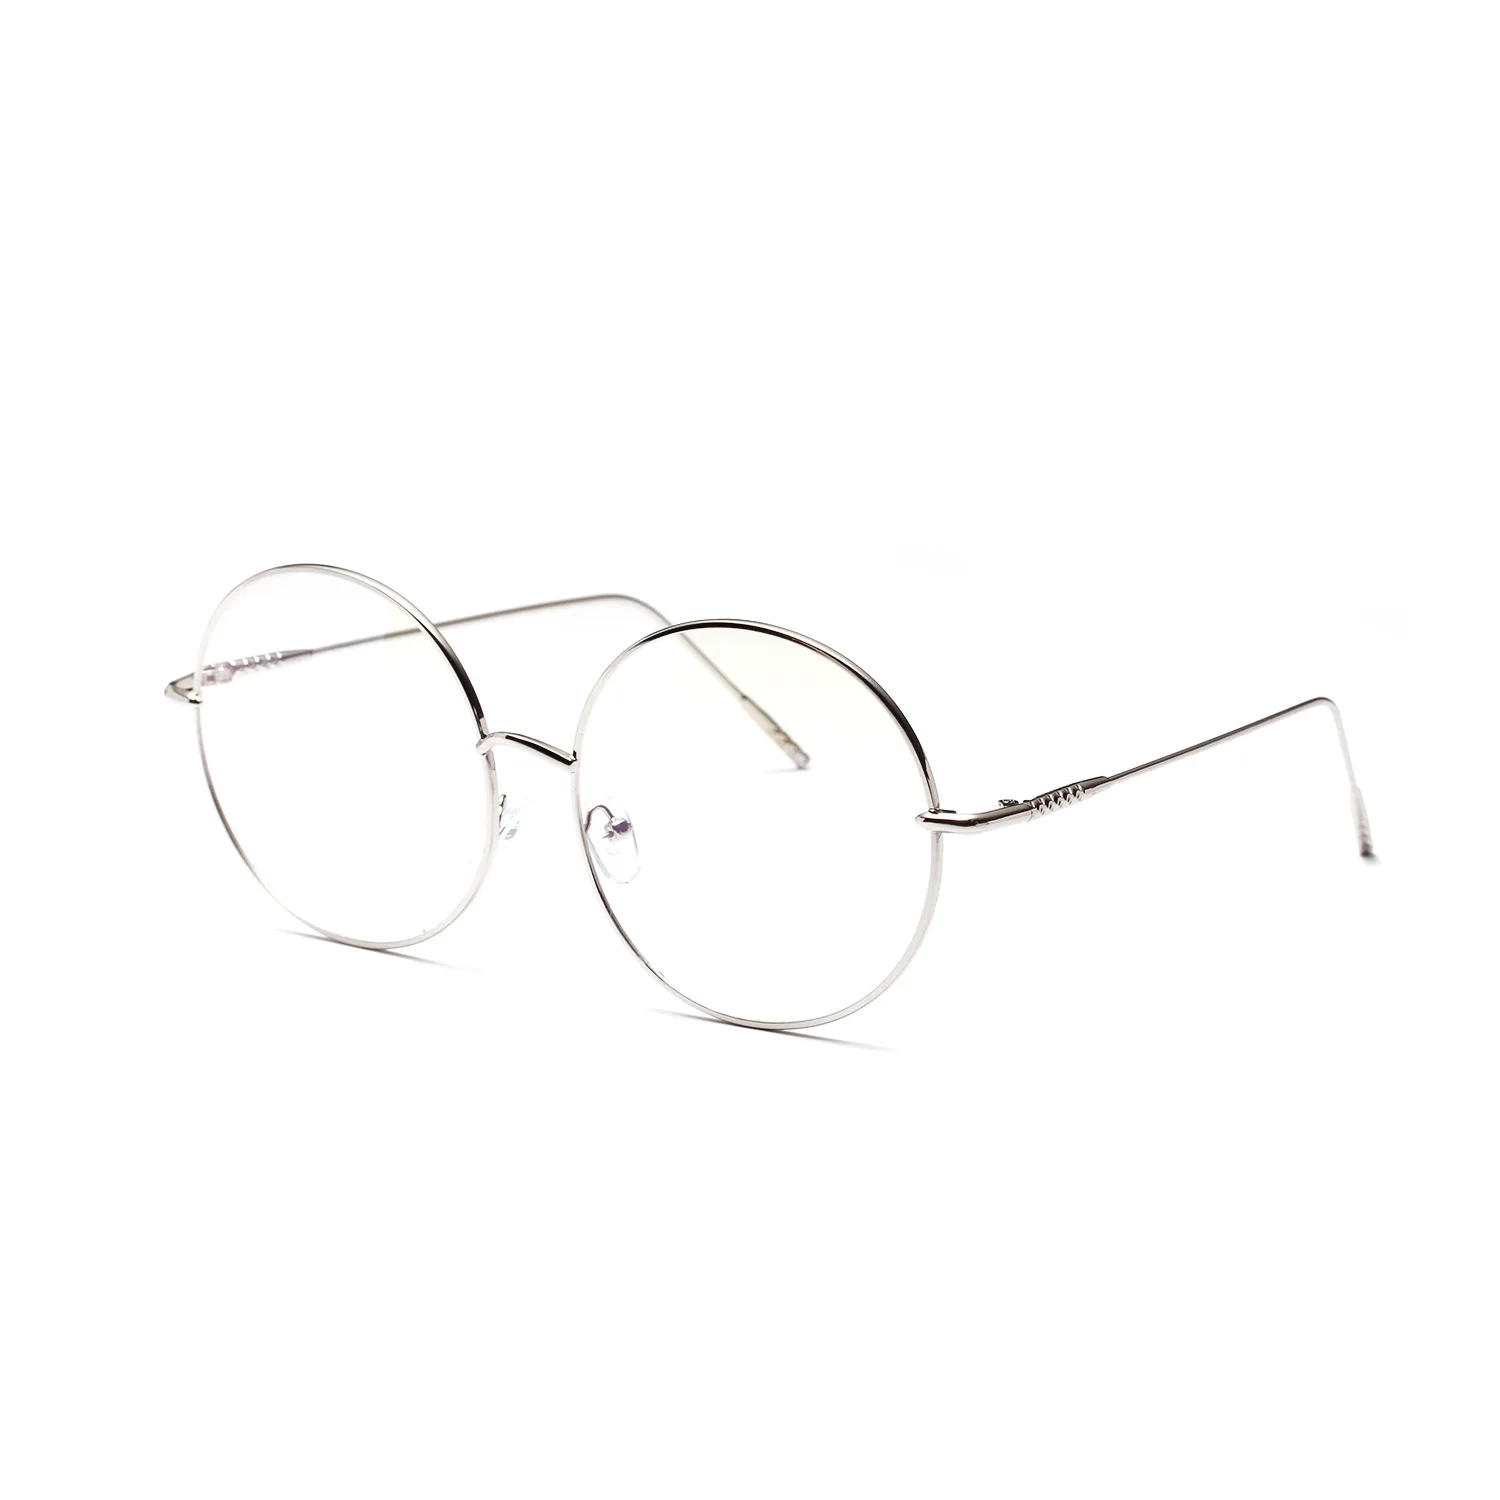 Metal çerçeve yuvarlak düz gözlük kadın ince çerçeve dekoratif gözlük erkekler ve kadınlar için uv400 Görüntü 2